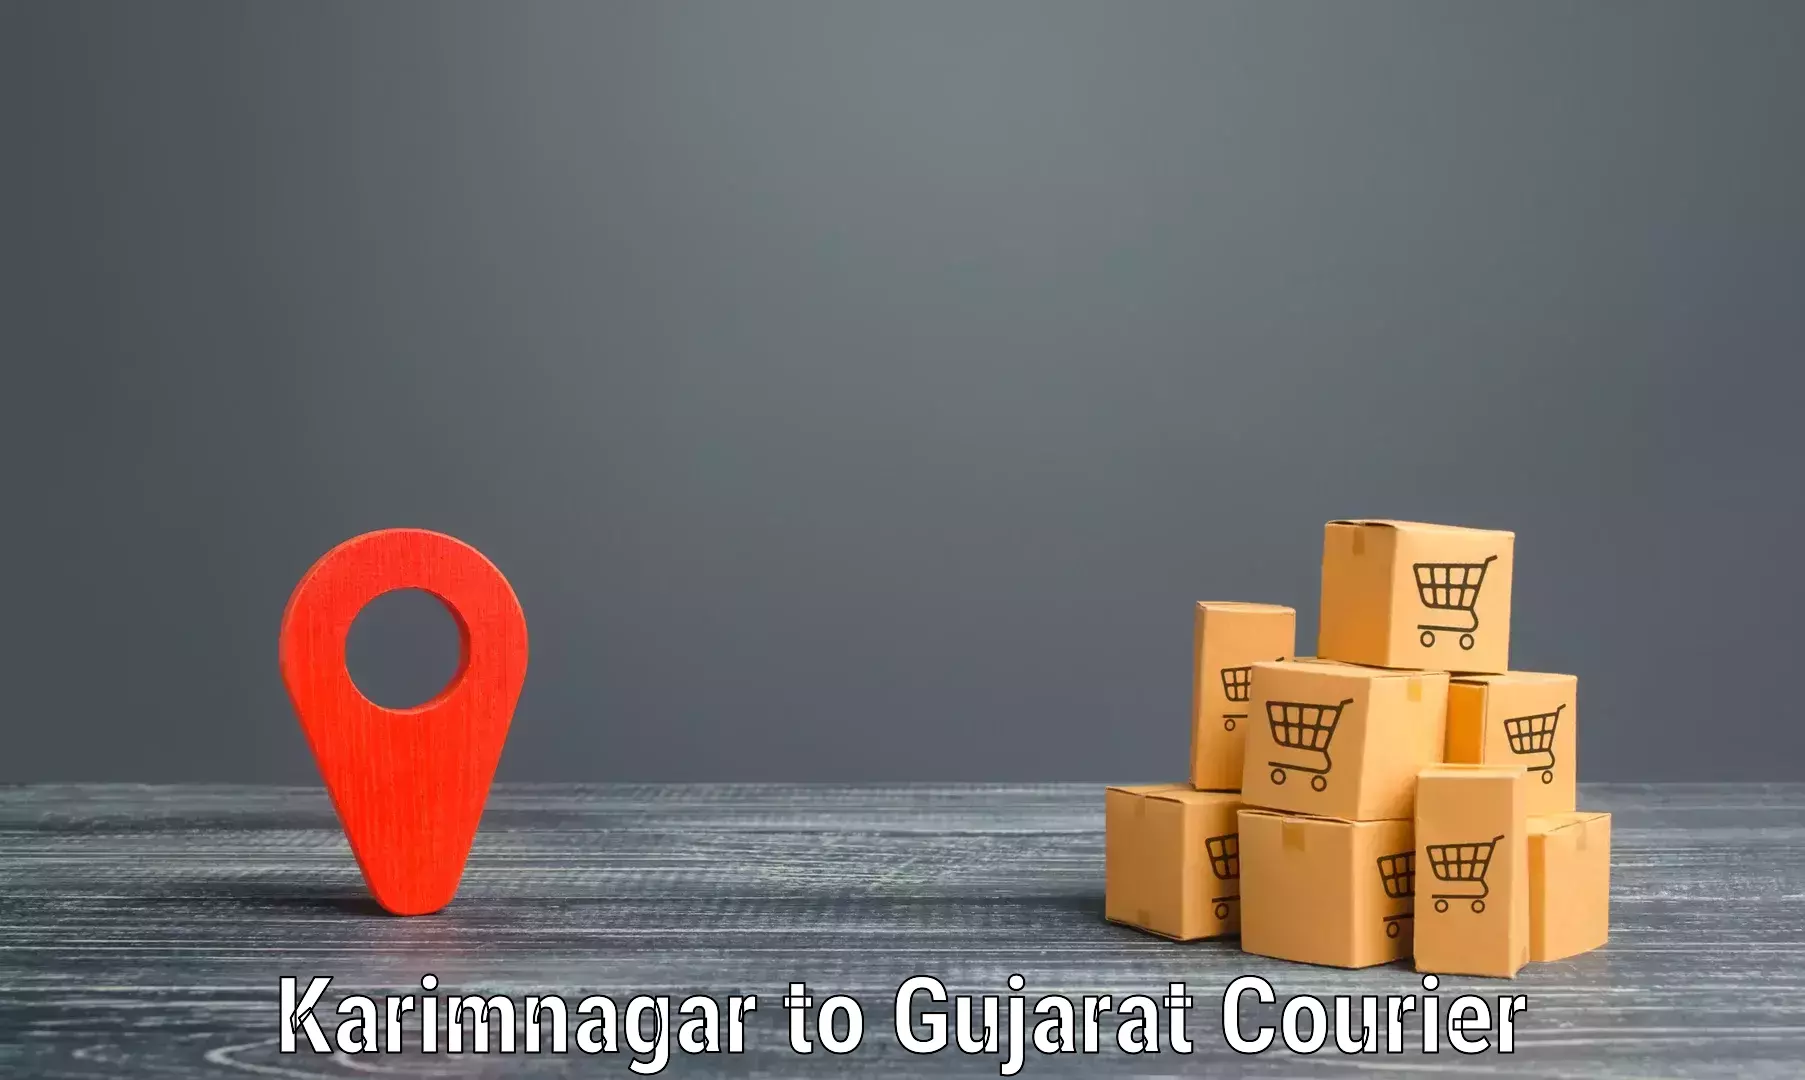 Nationwide delivery network Karimnagar to Karjan